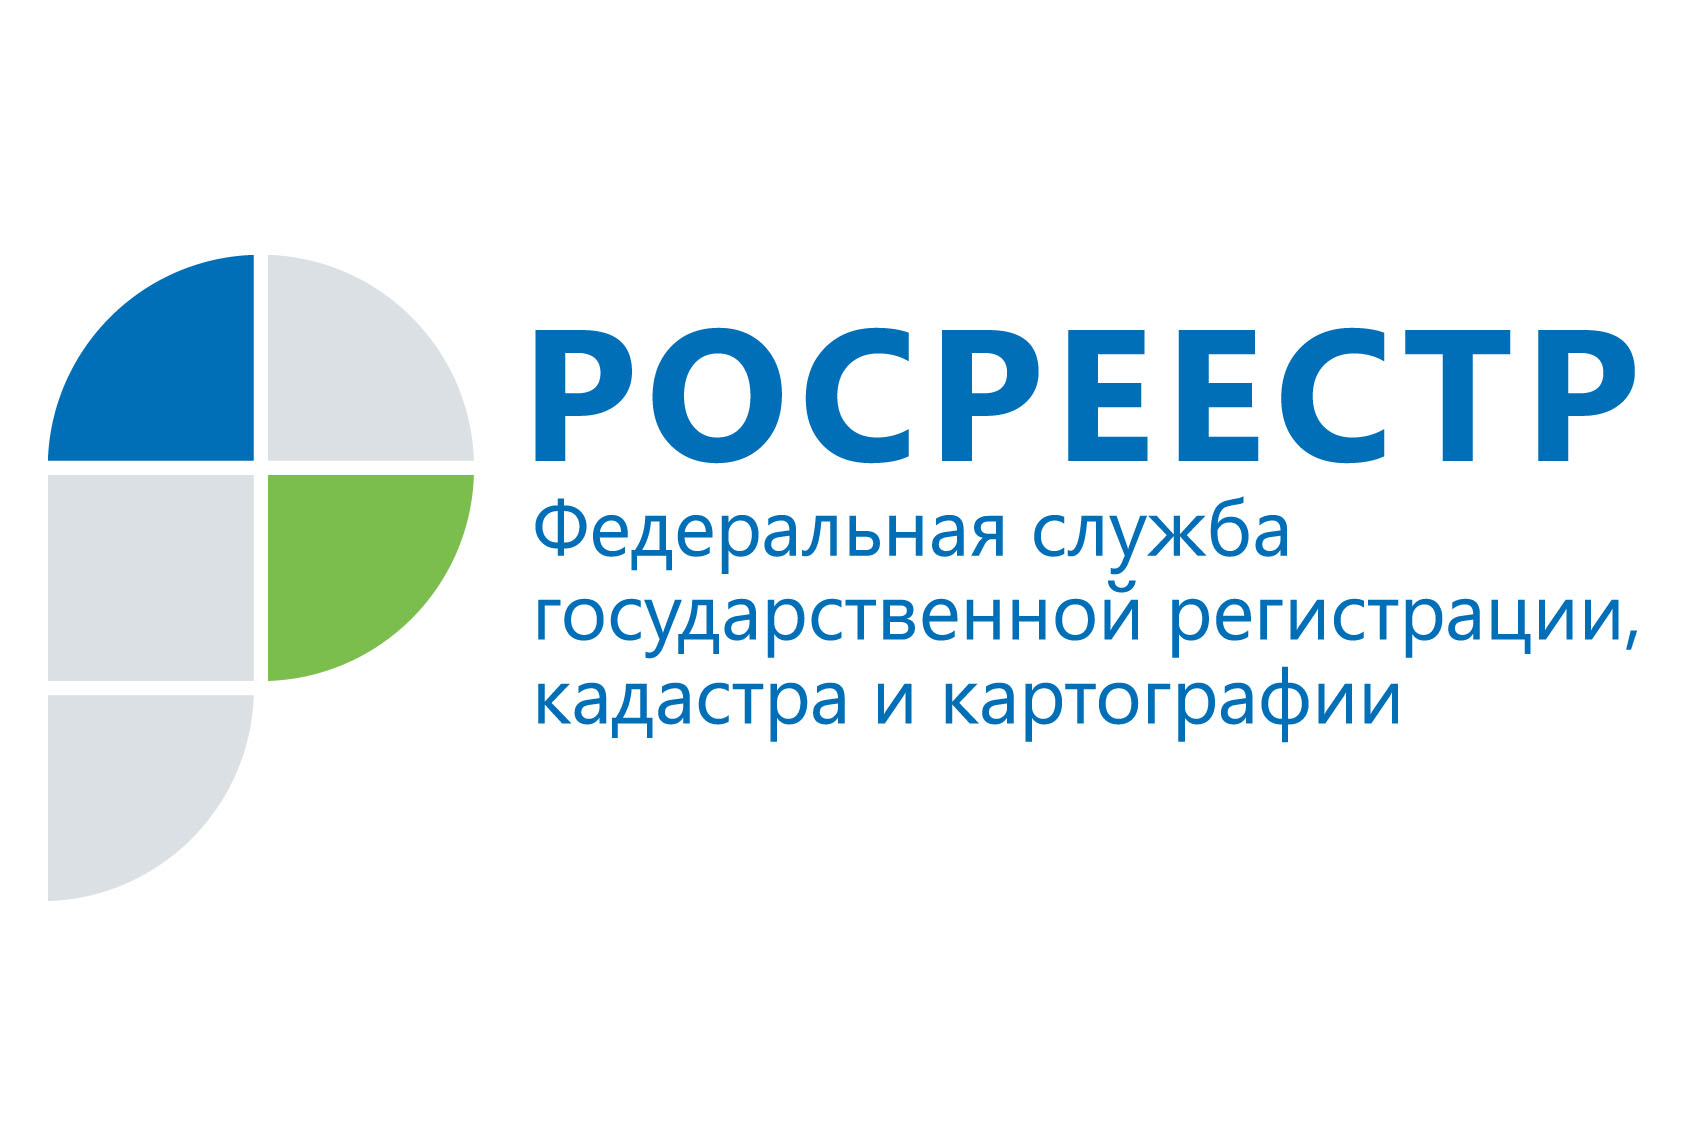 Коллегия Росреестра: в Москве зарегистрировано более 1,7 млн прав собственности за год  - фото 1